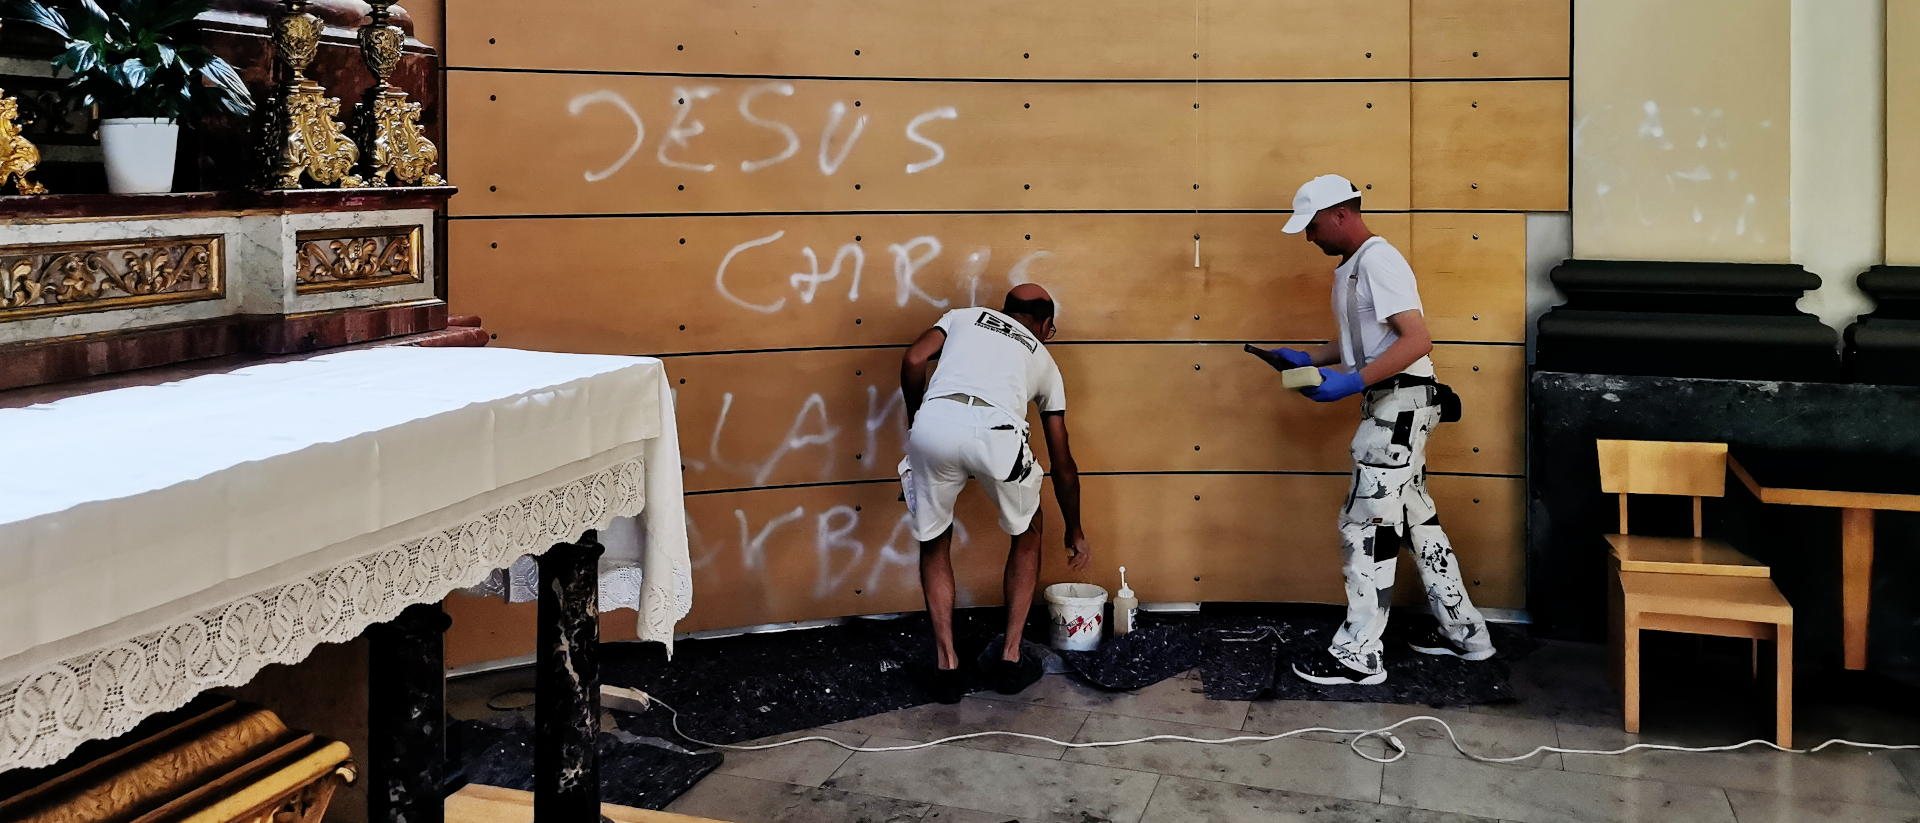 Gli operai hanno già iniziato a pulire le scritte nella chiesa di San Giuseppe a Basilea